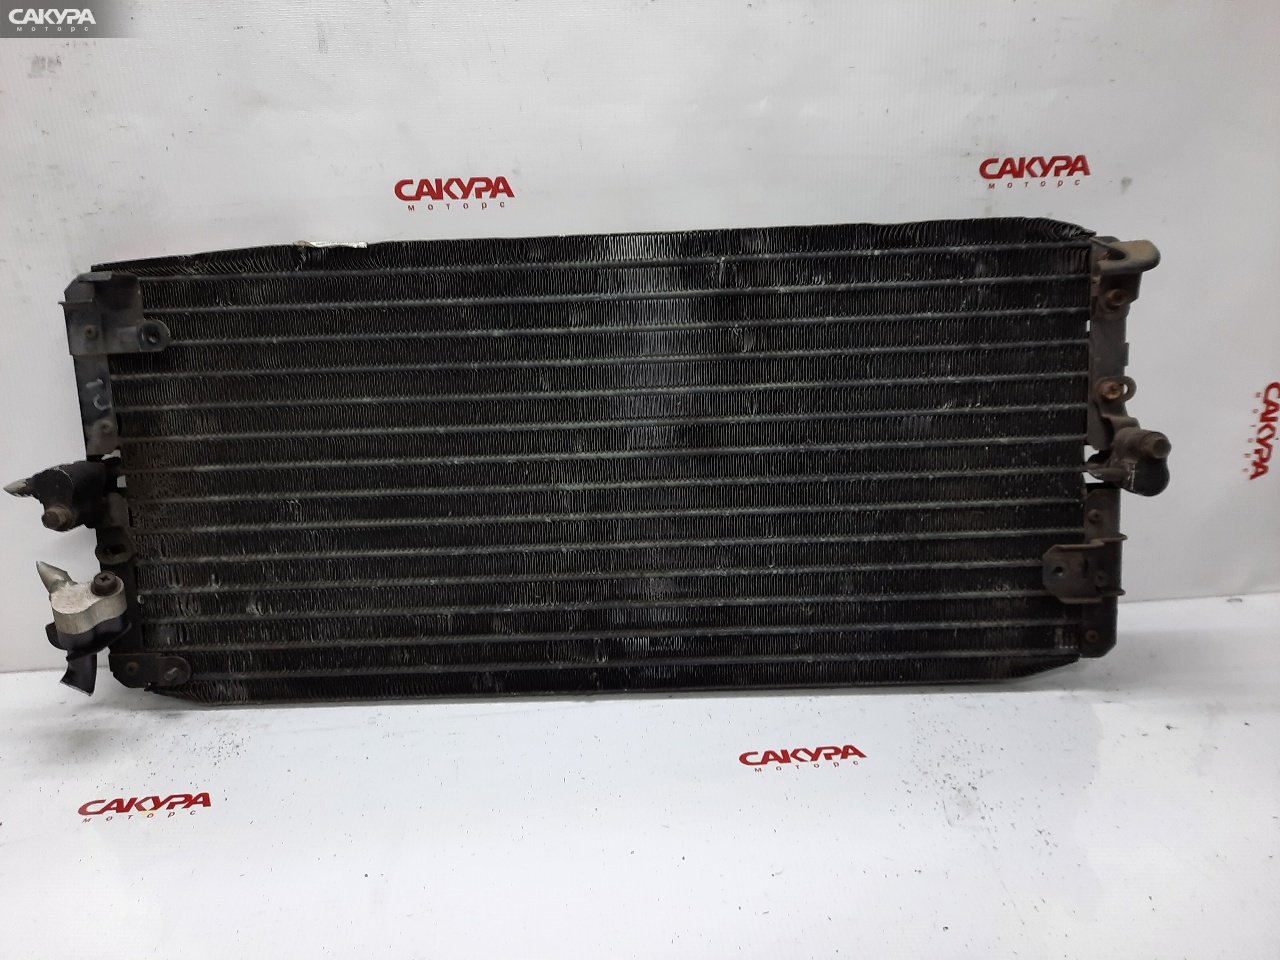 Радиатор кондиционера Toyota Corona ST170 4S-FE: купить в Сакура Красноярск.